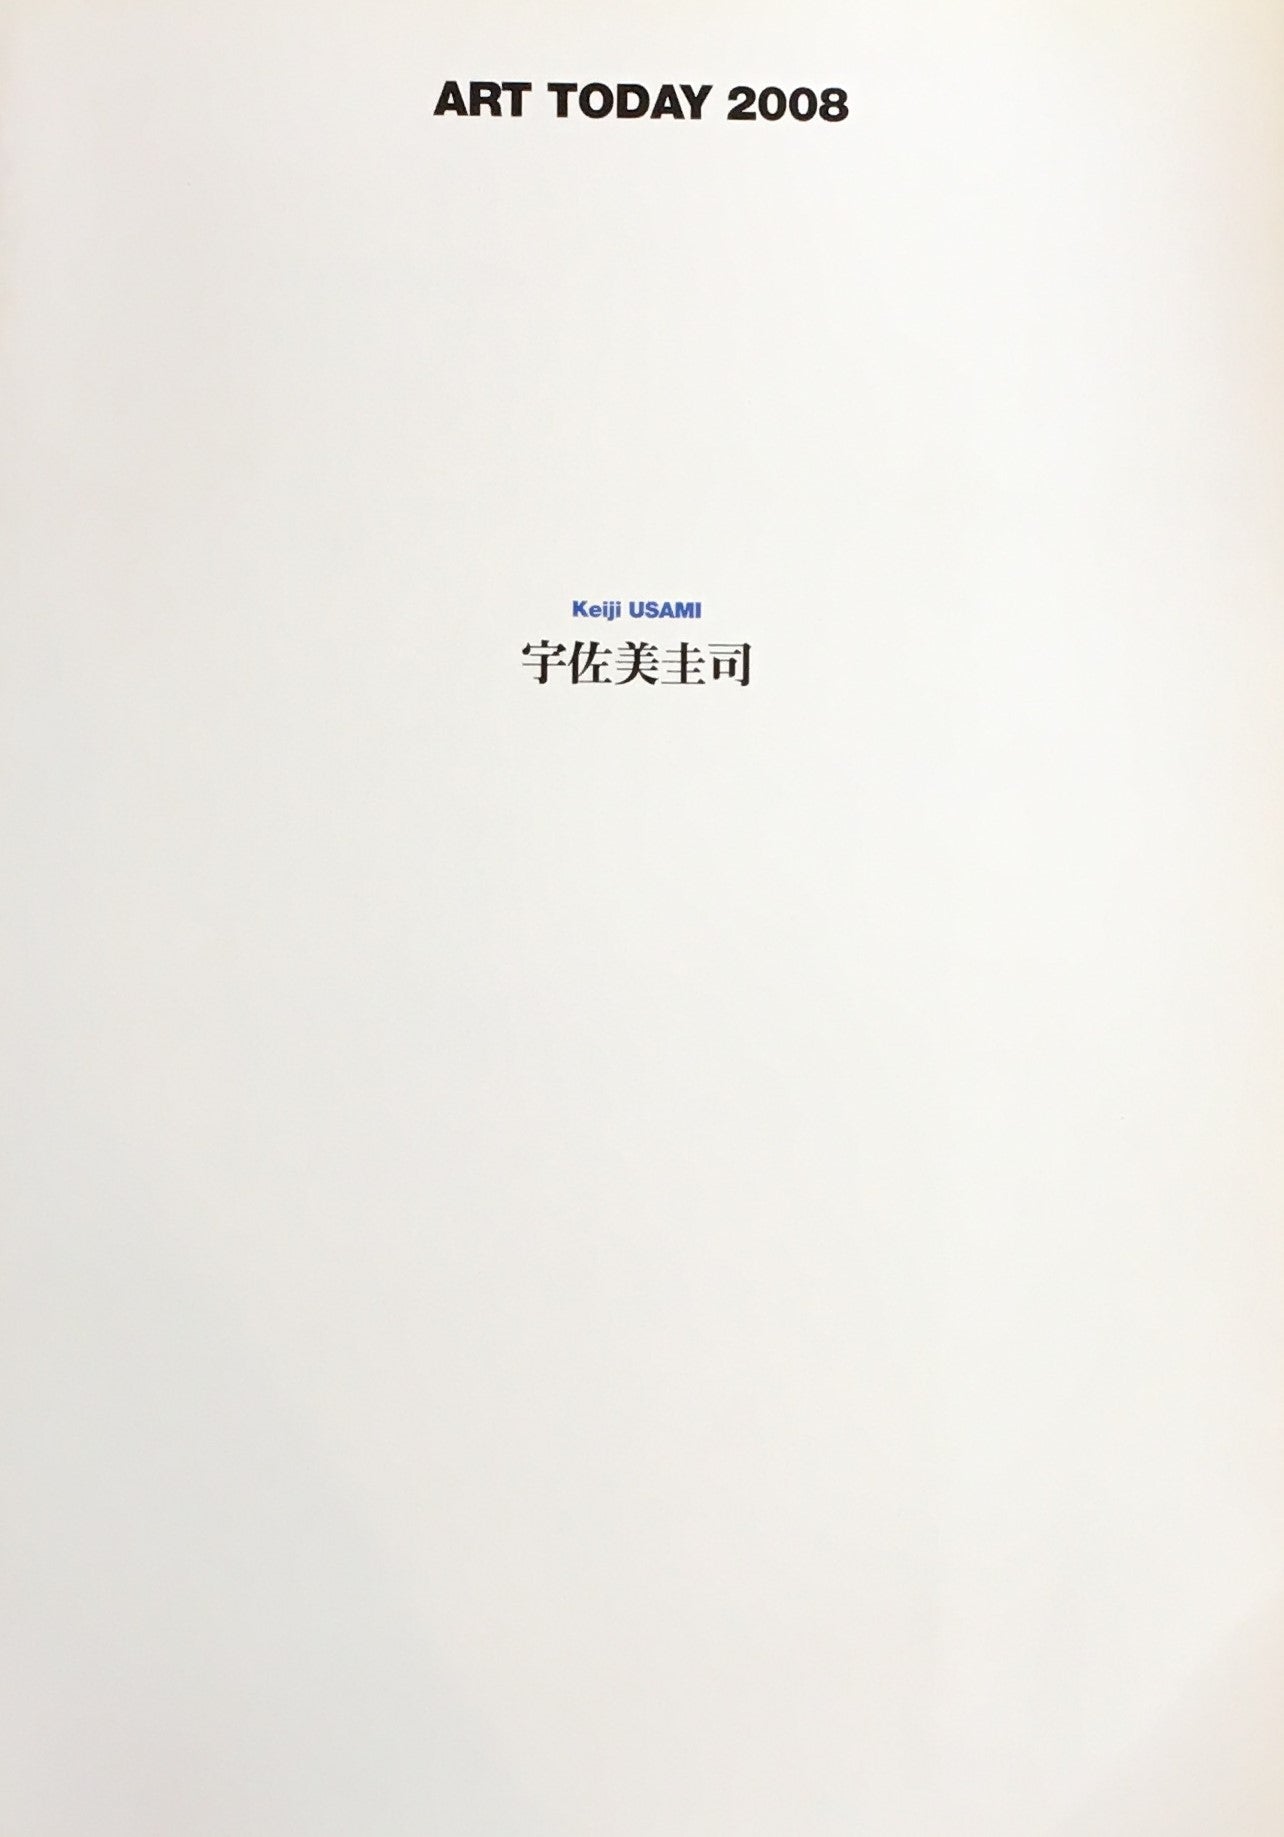 宇佐美圭司展「還元」から「大洪水」へ　ART TODAY 2008